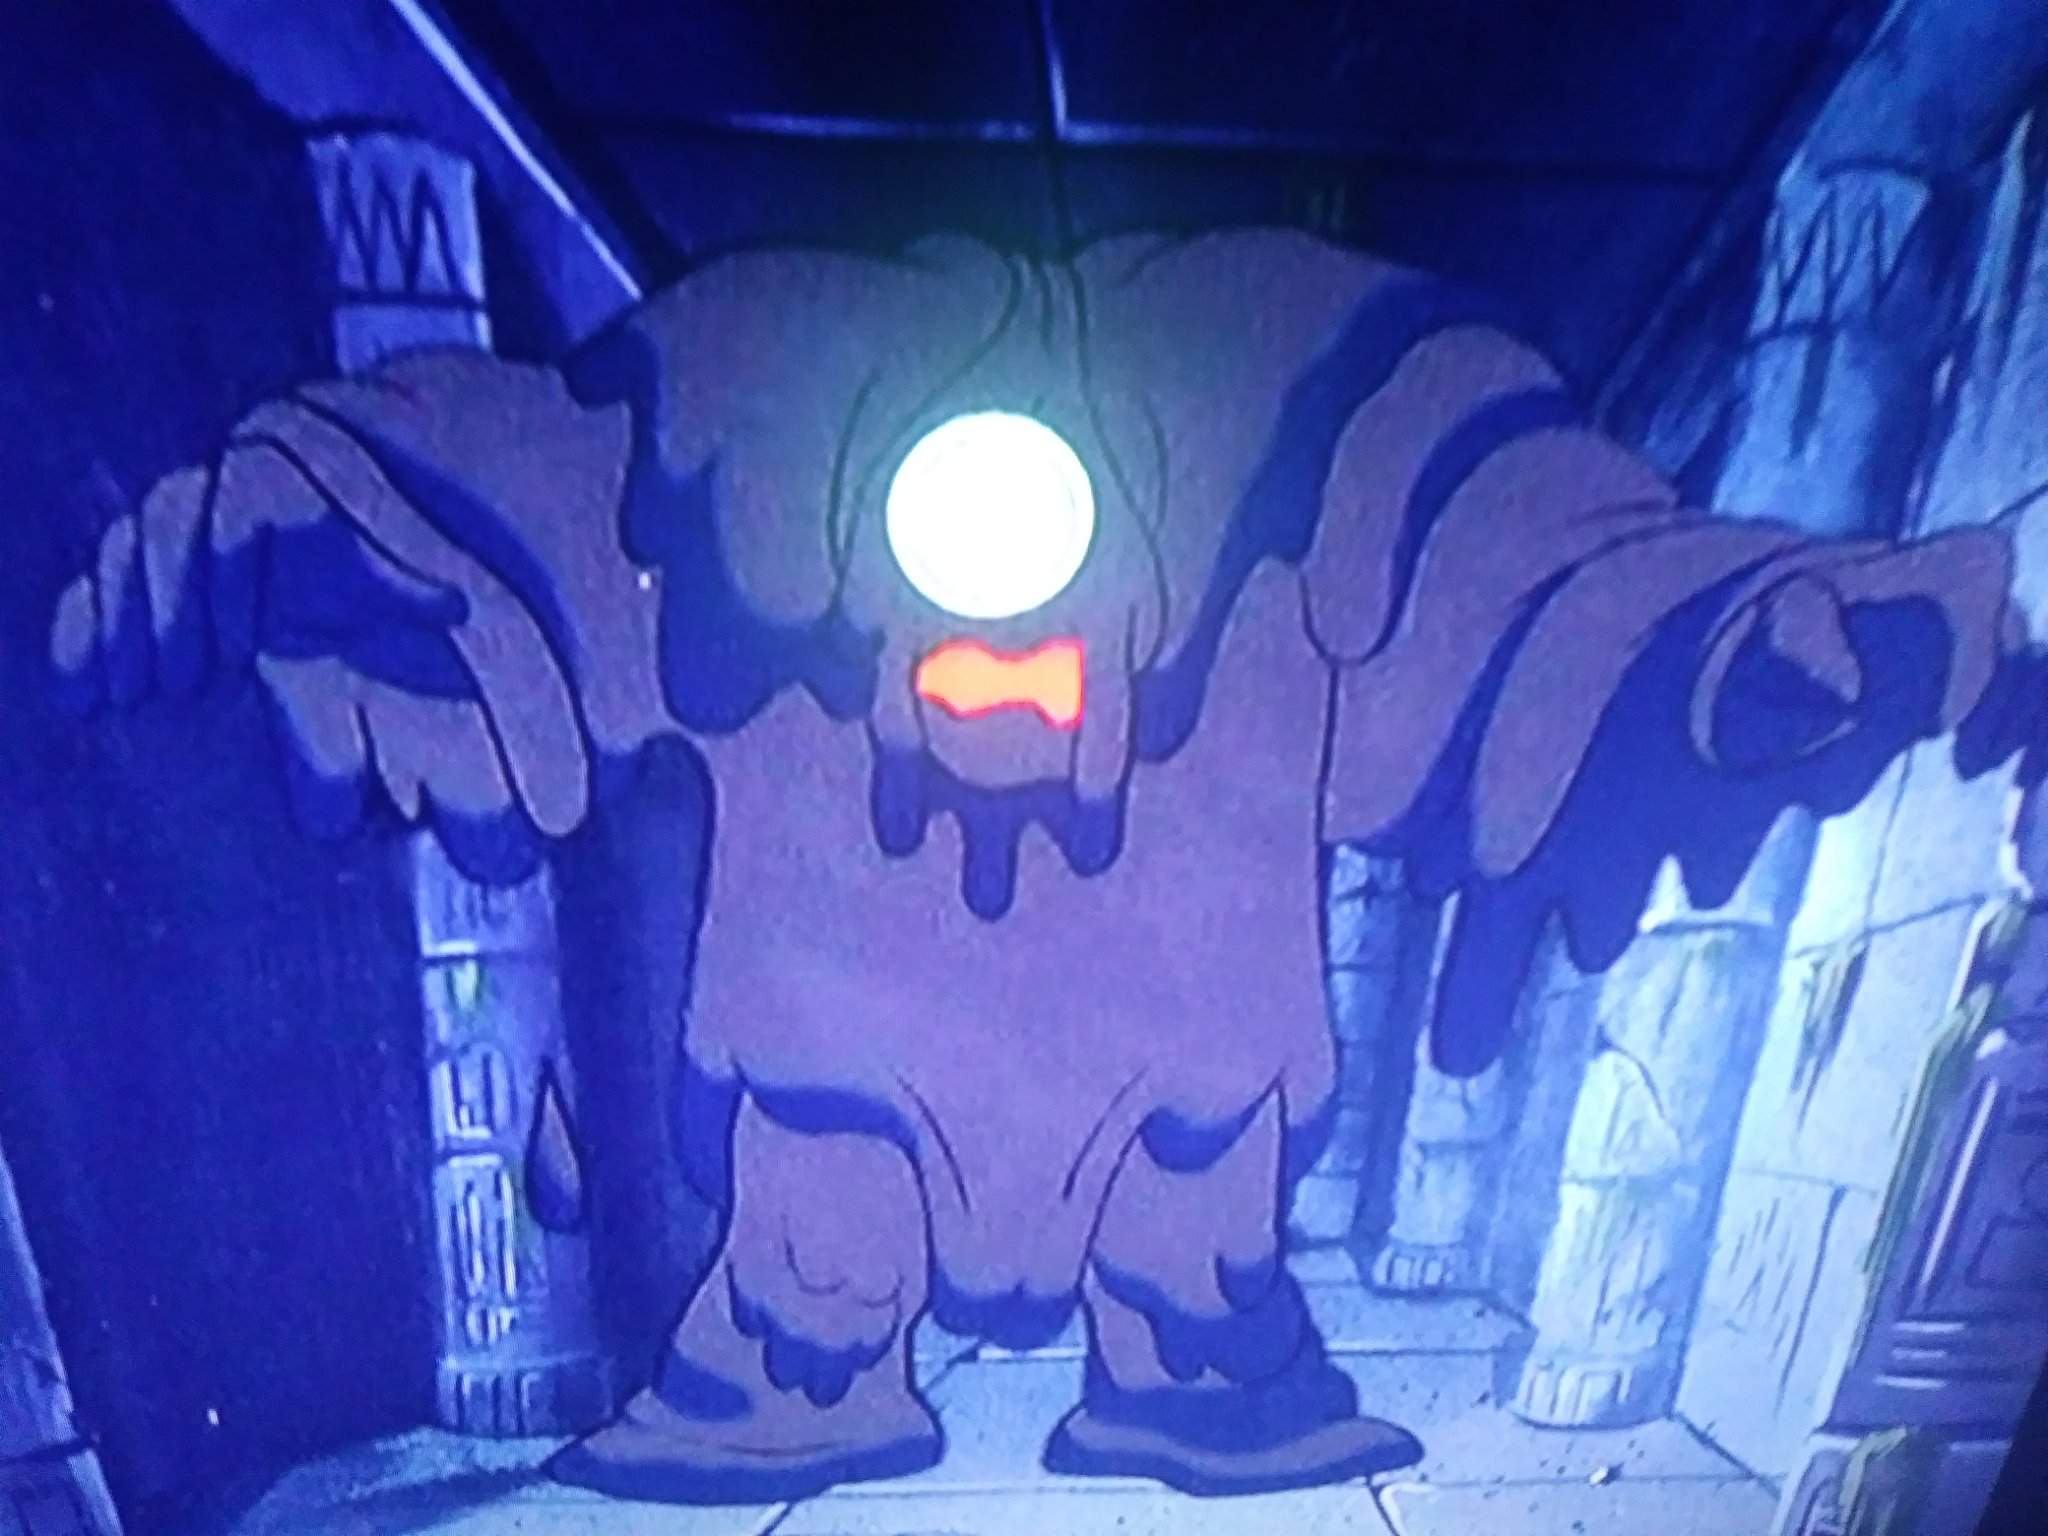 Tar Monster Scooby Doo 2